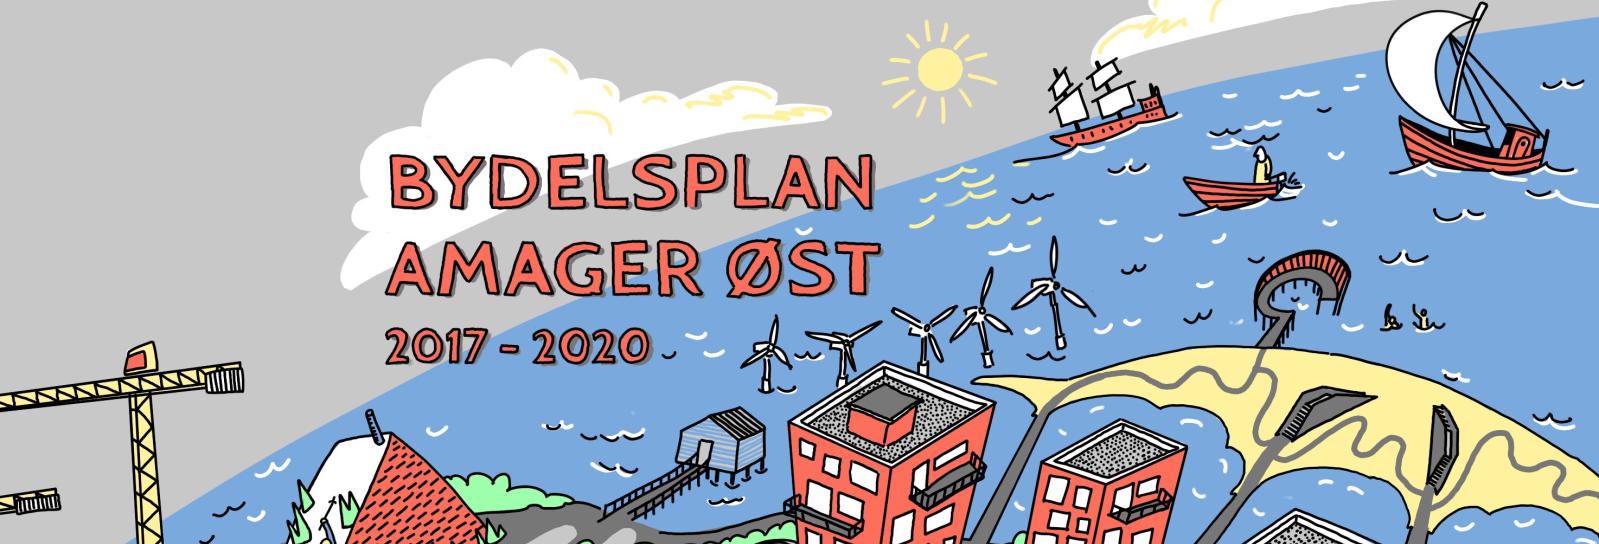 Amager Øst Lokaludvalgs bydelsplan 2017-2020